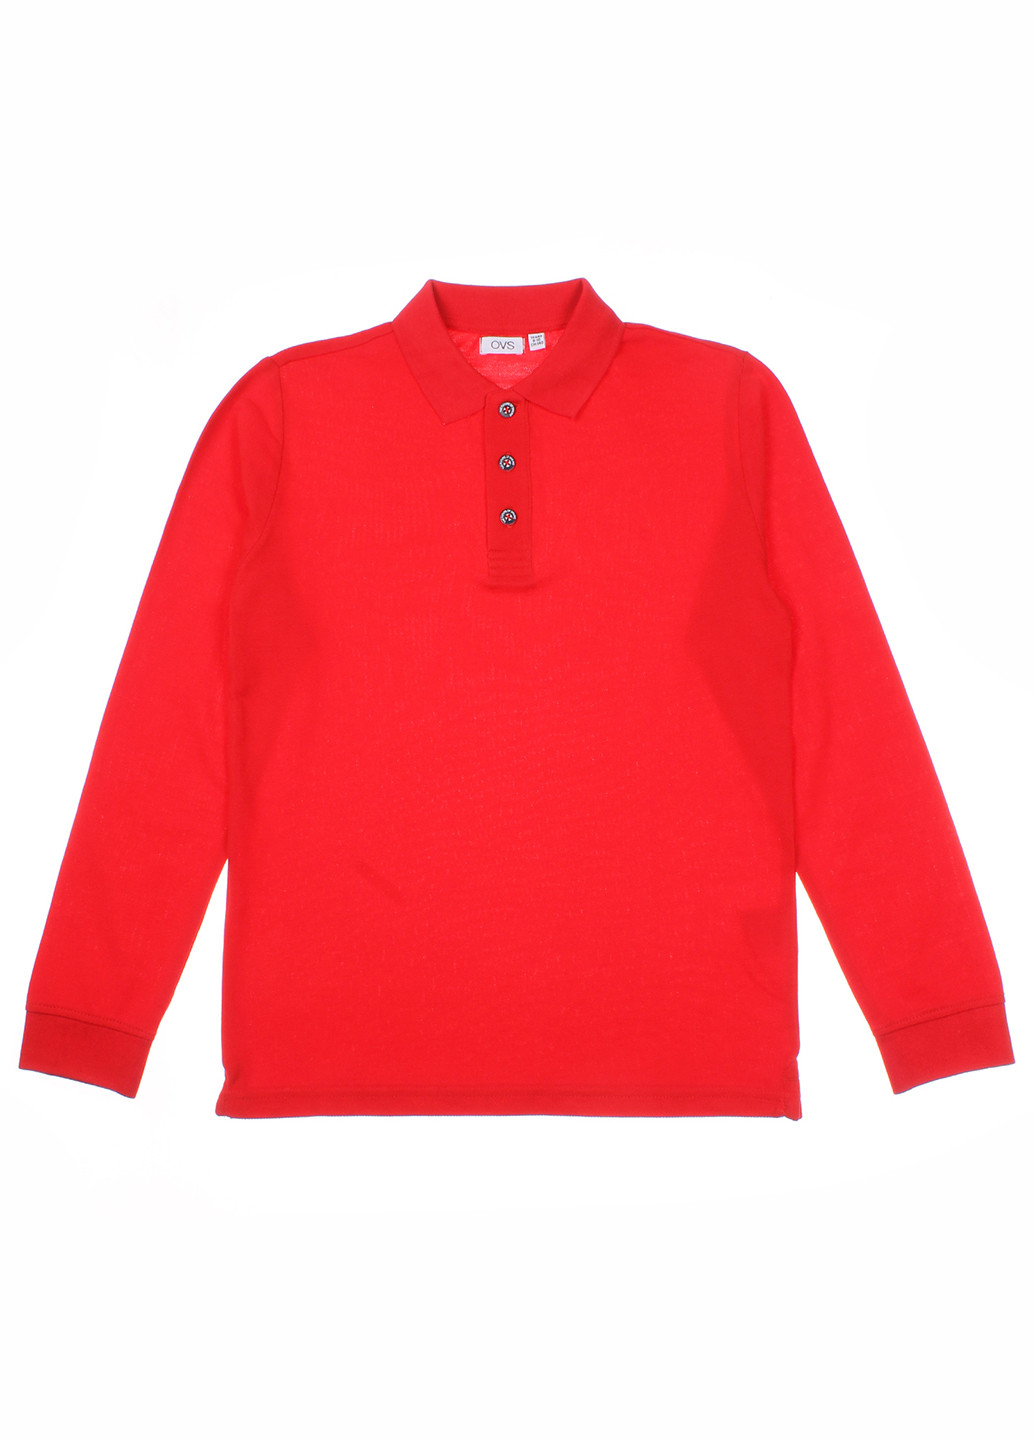 Красная детская футболка-поло для мальчика OVS однотонная